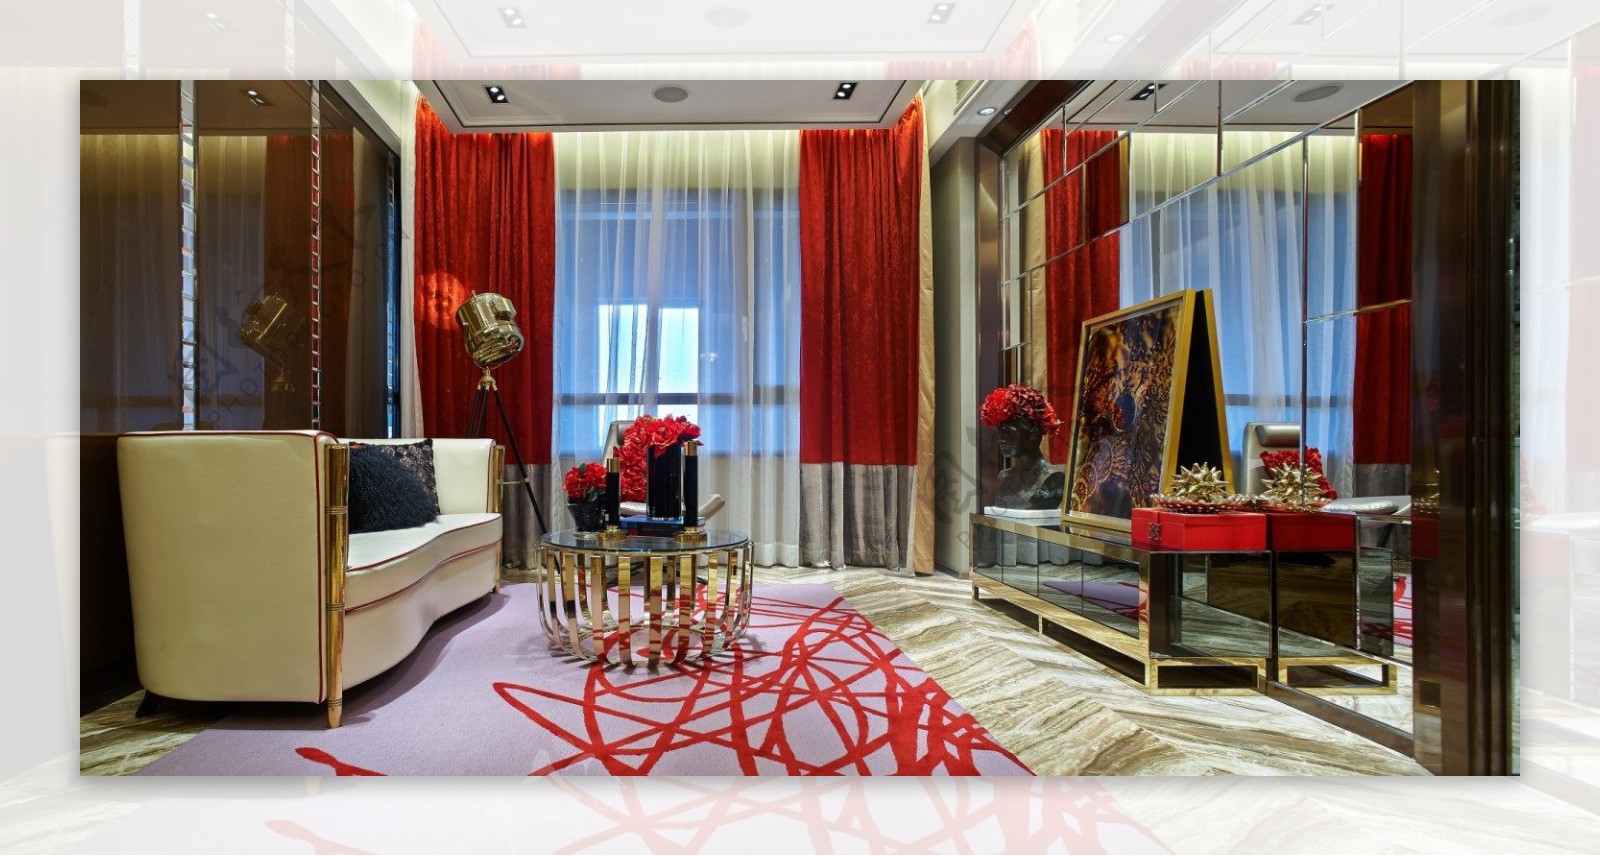 红色窗帘客厅现代效果图